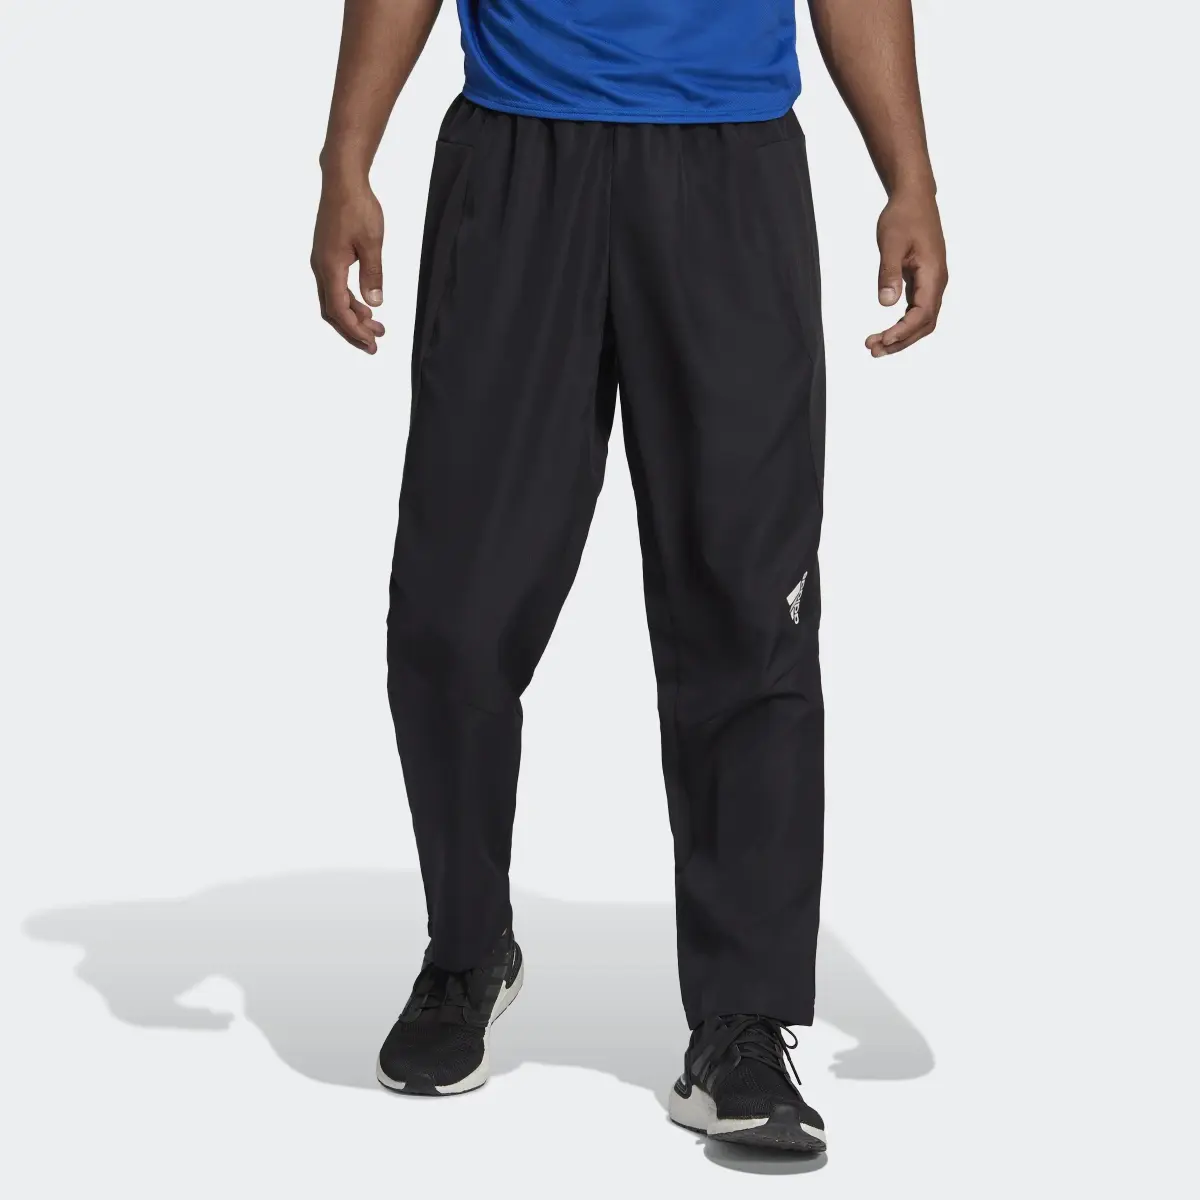 Adidas Pantaloni da allenamento AEROREADY Designed for Movement. 1